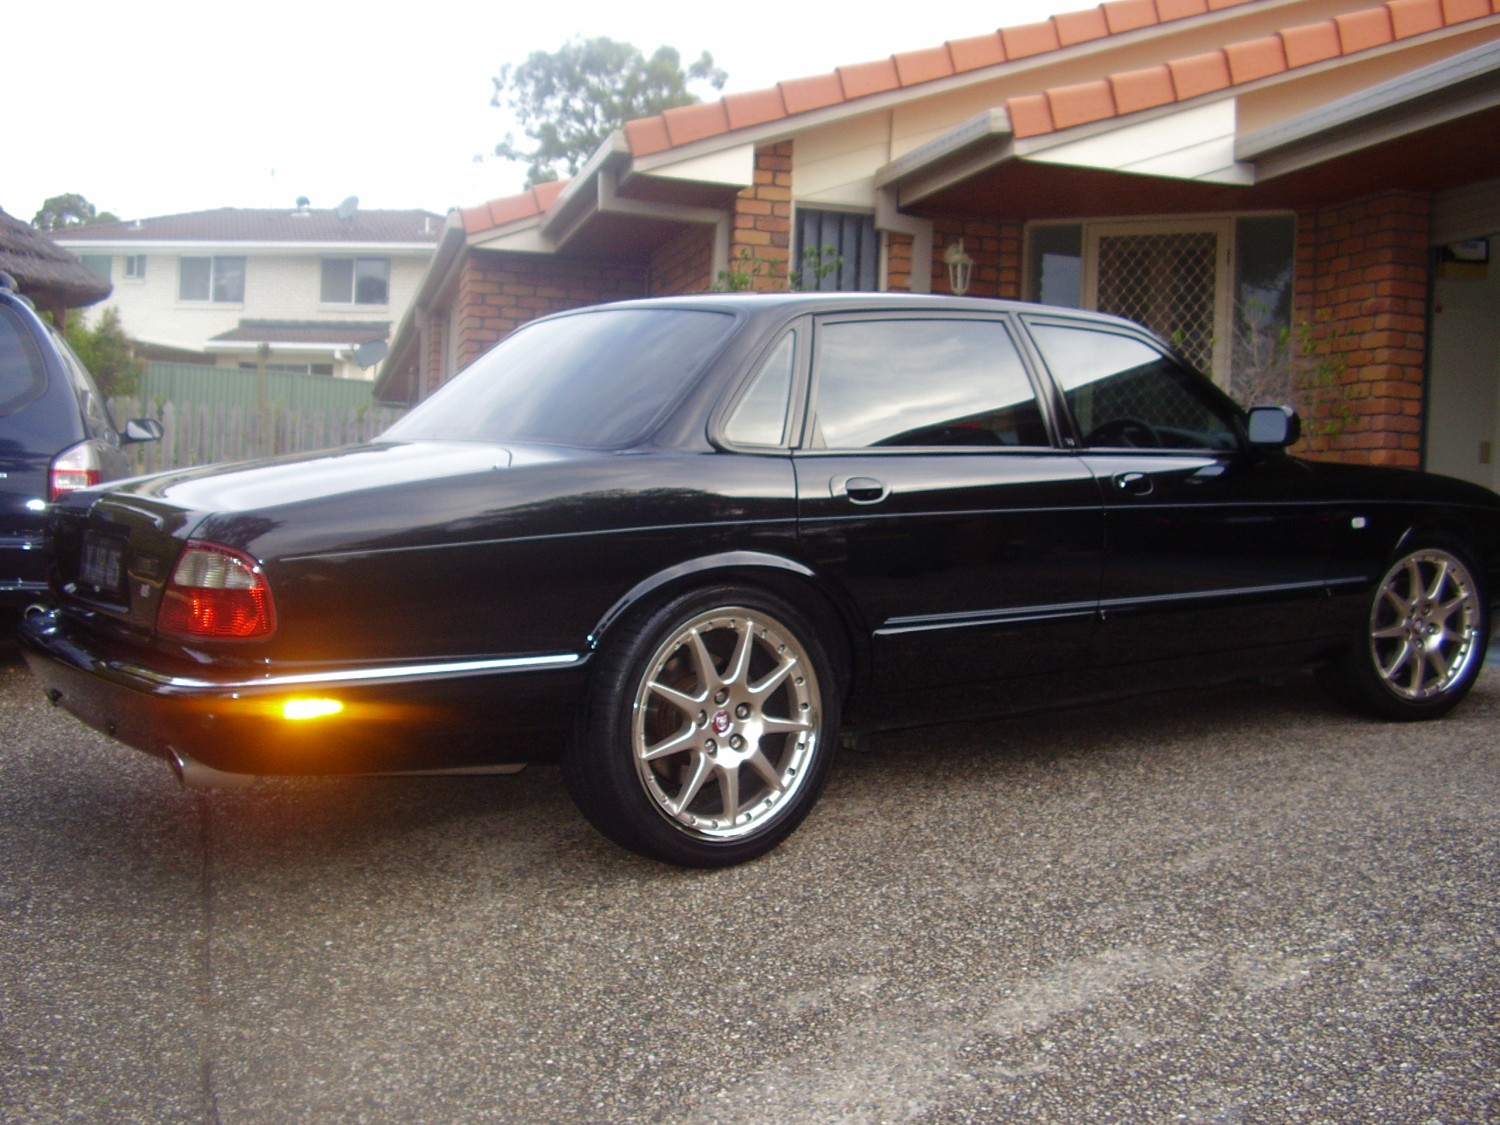 1998 Jaguar XJR 4.0 SUPERCHARGED